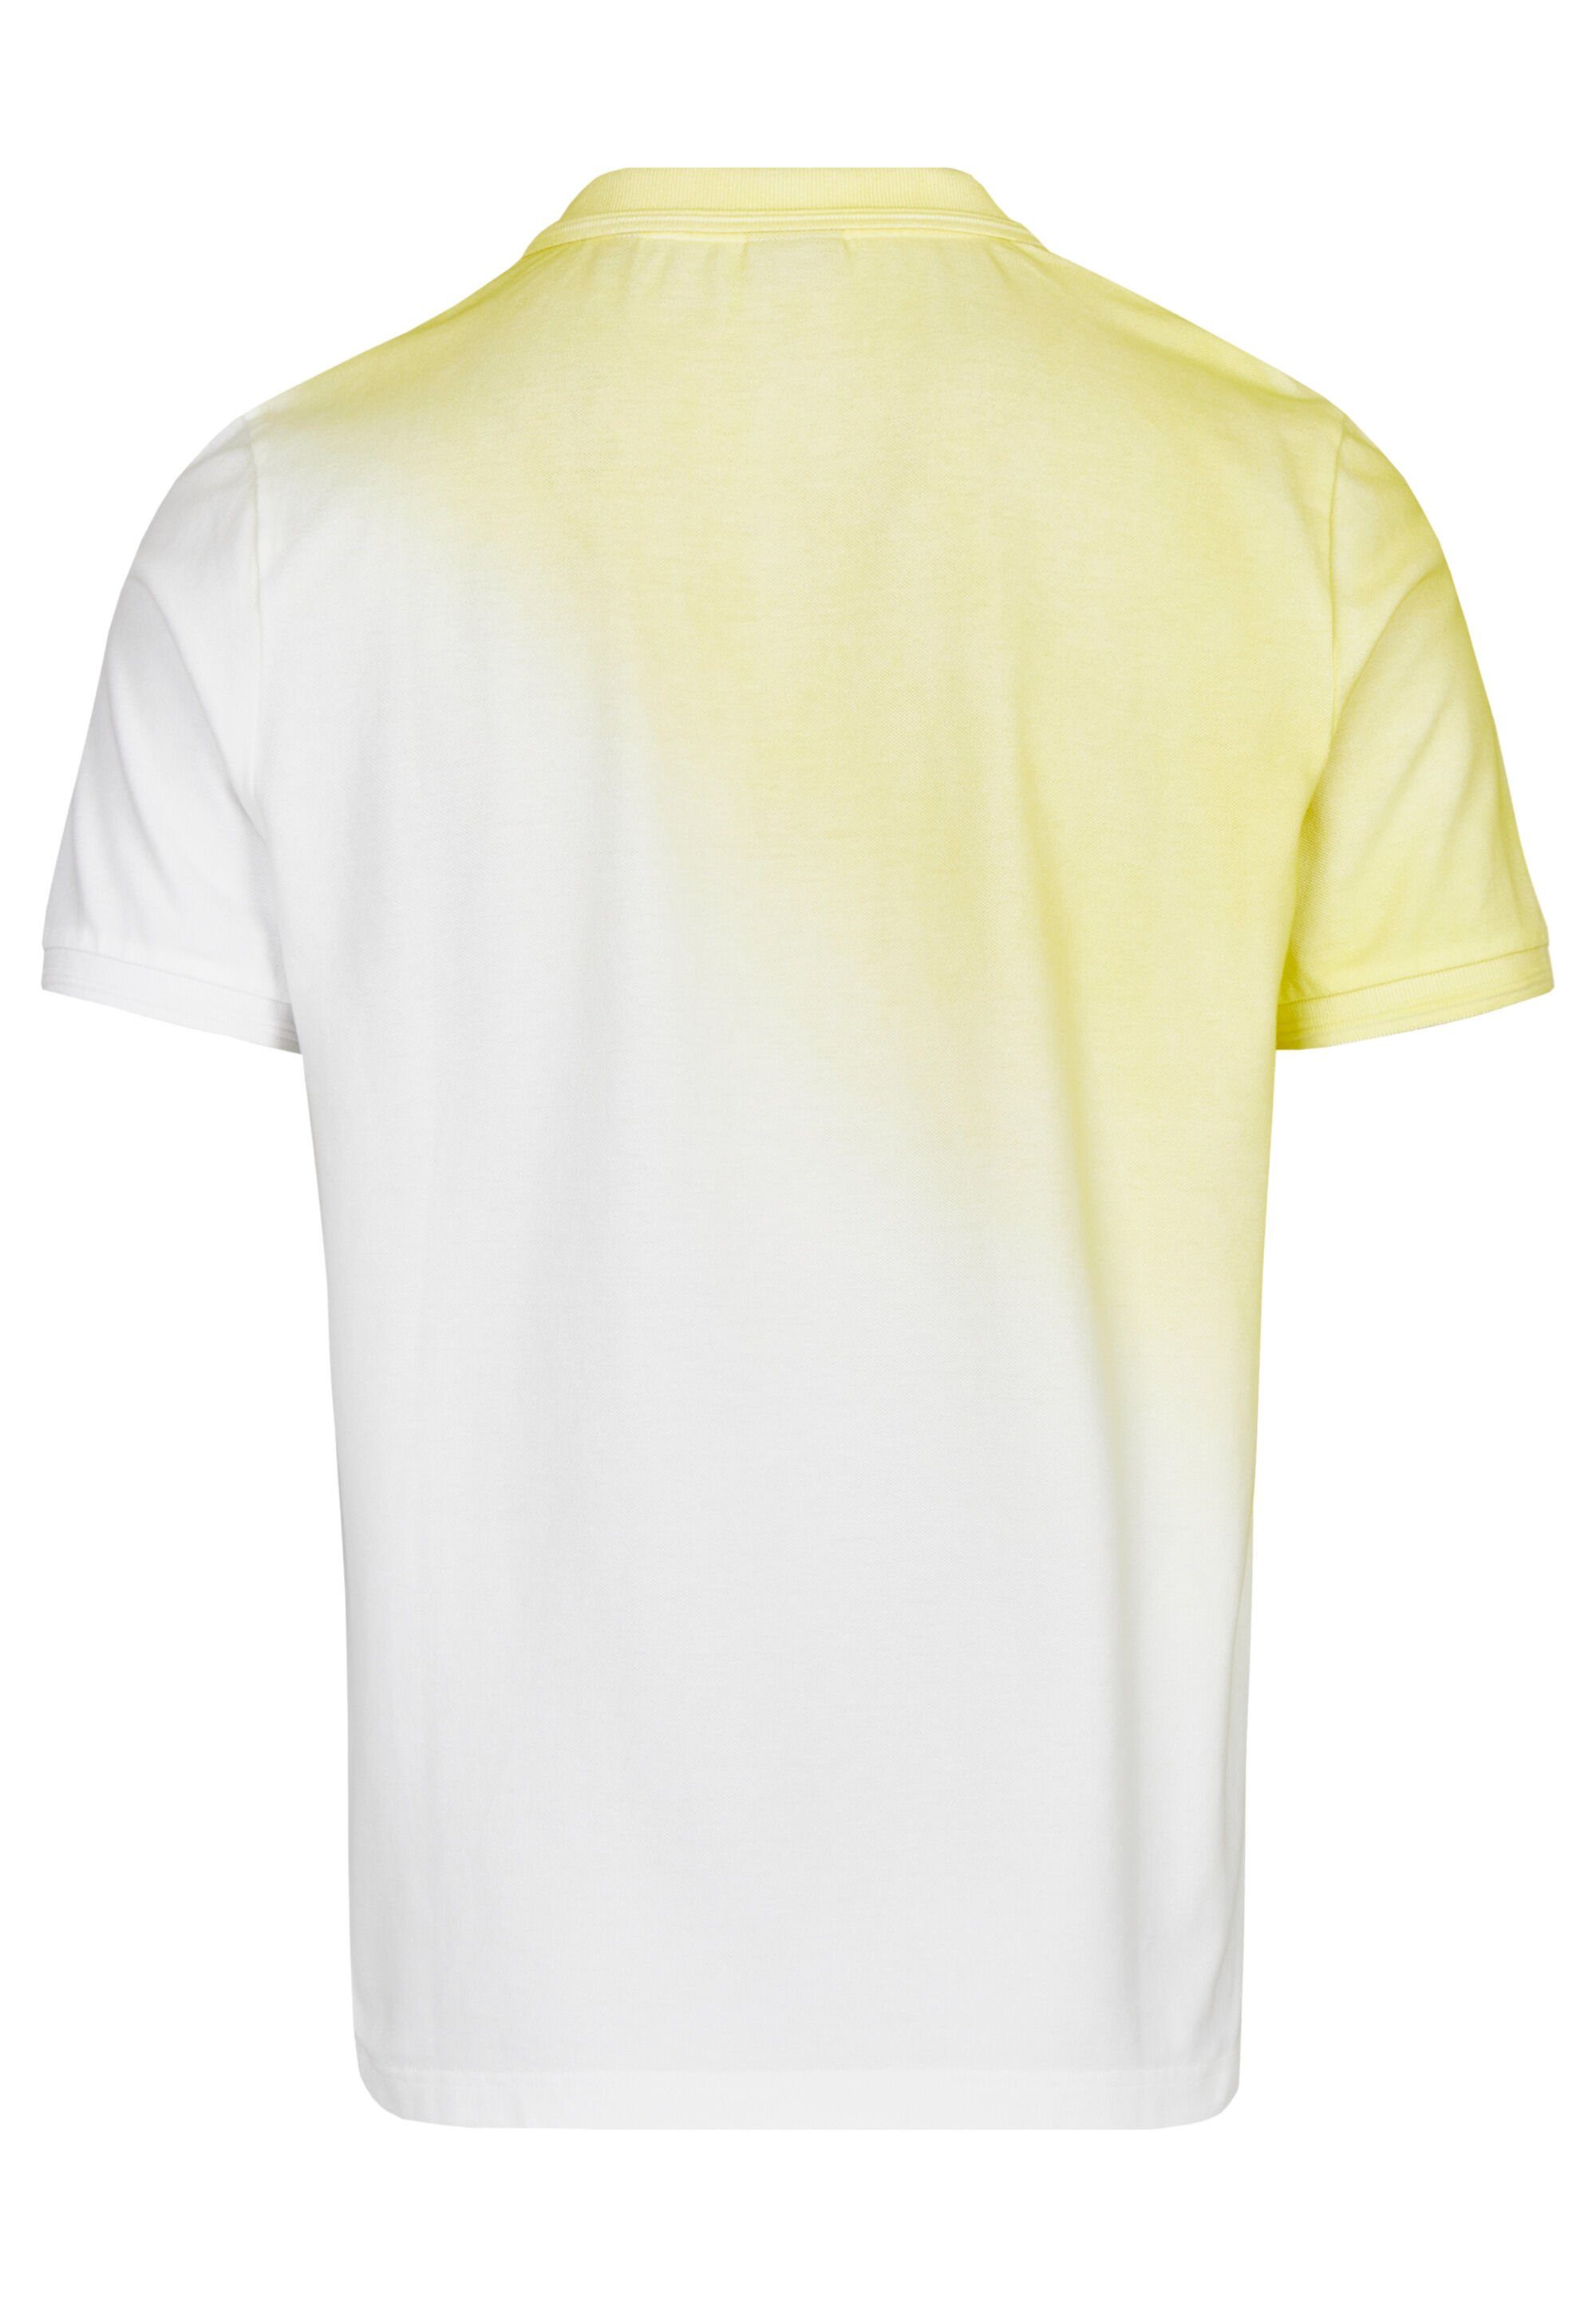 HECHTER PARIS Poloshirt mit ausgefallenem vanilla Spray-Dyed-Effekt